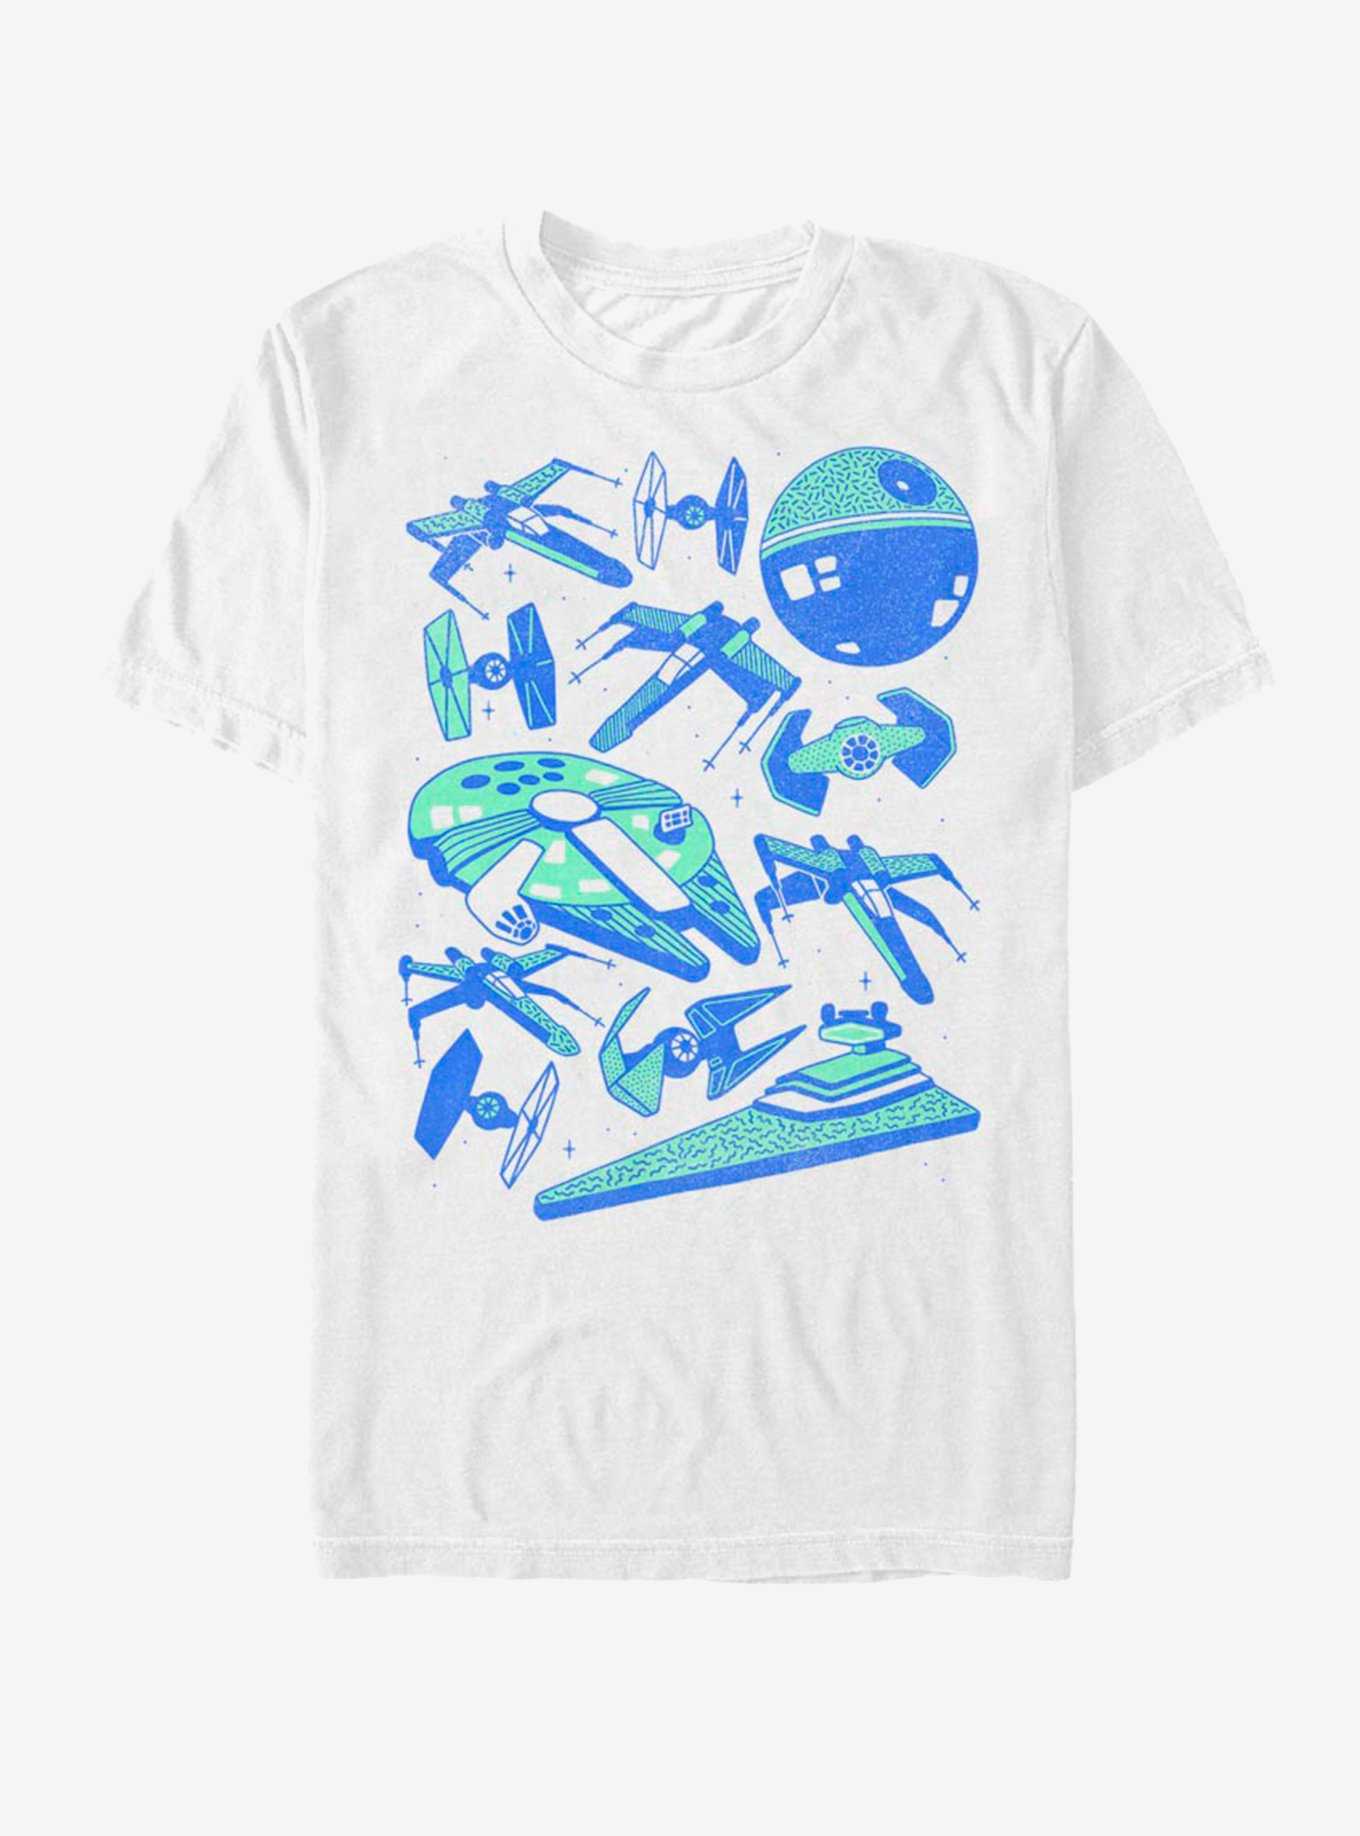 Star Wars Ships T-Shirt, , hi-res